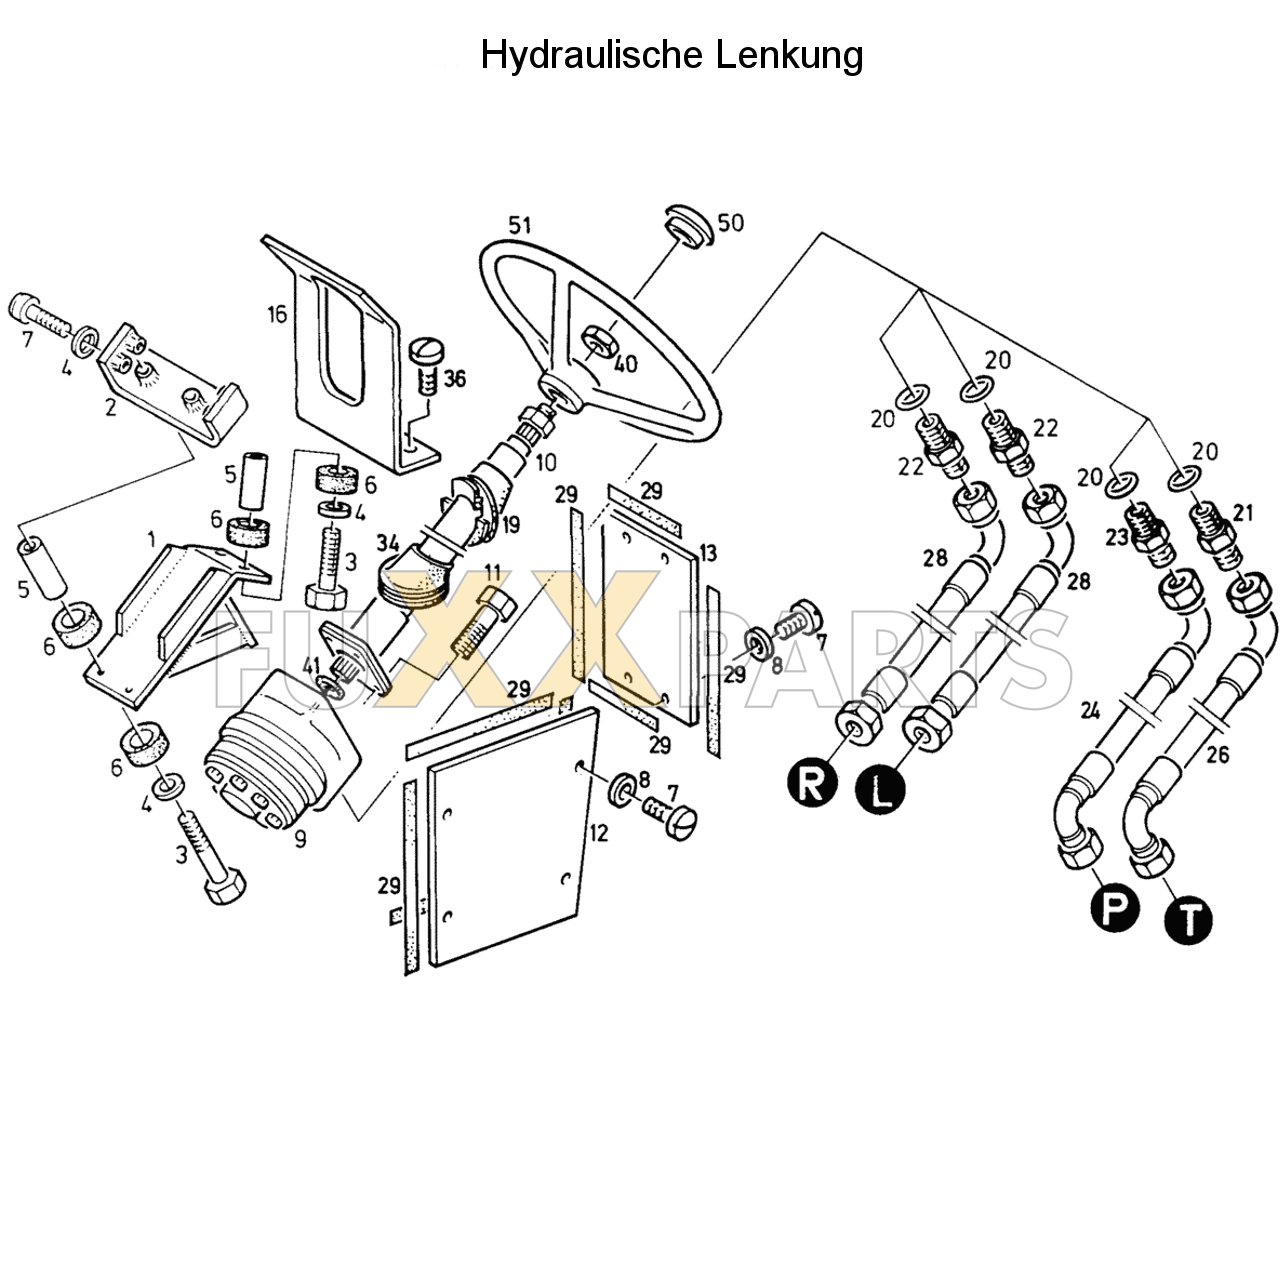 D 7207 C Hydraulische Lenkung 1